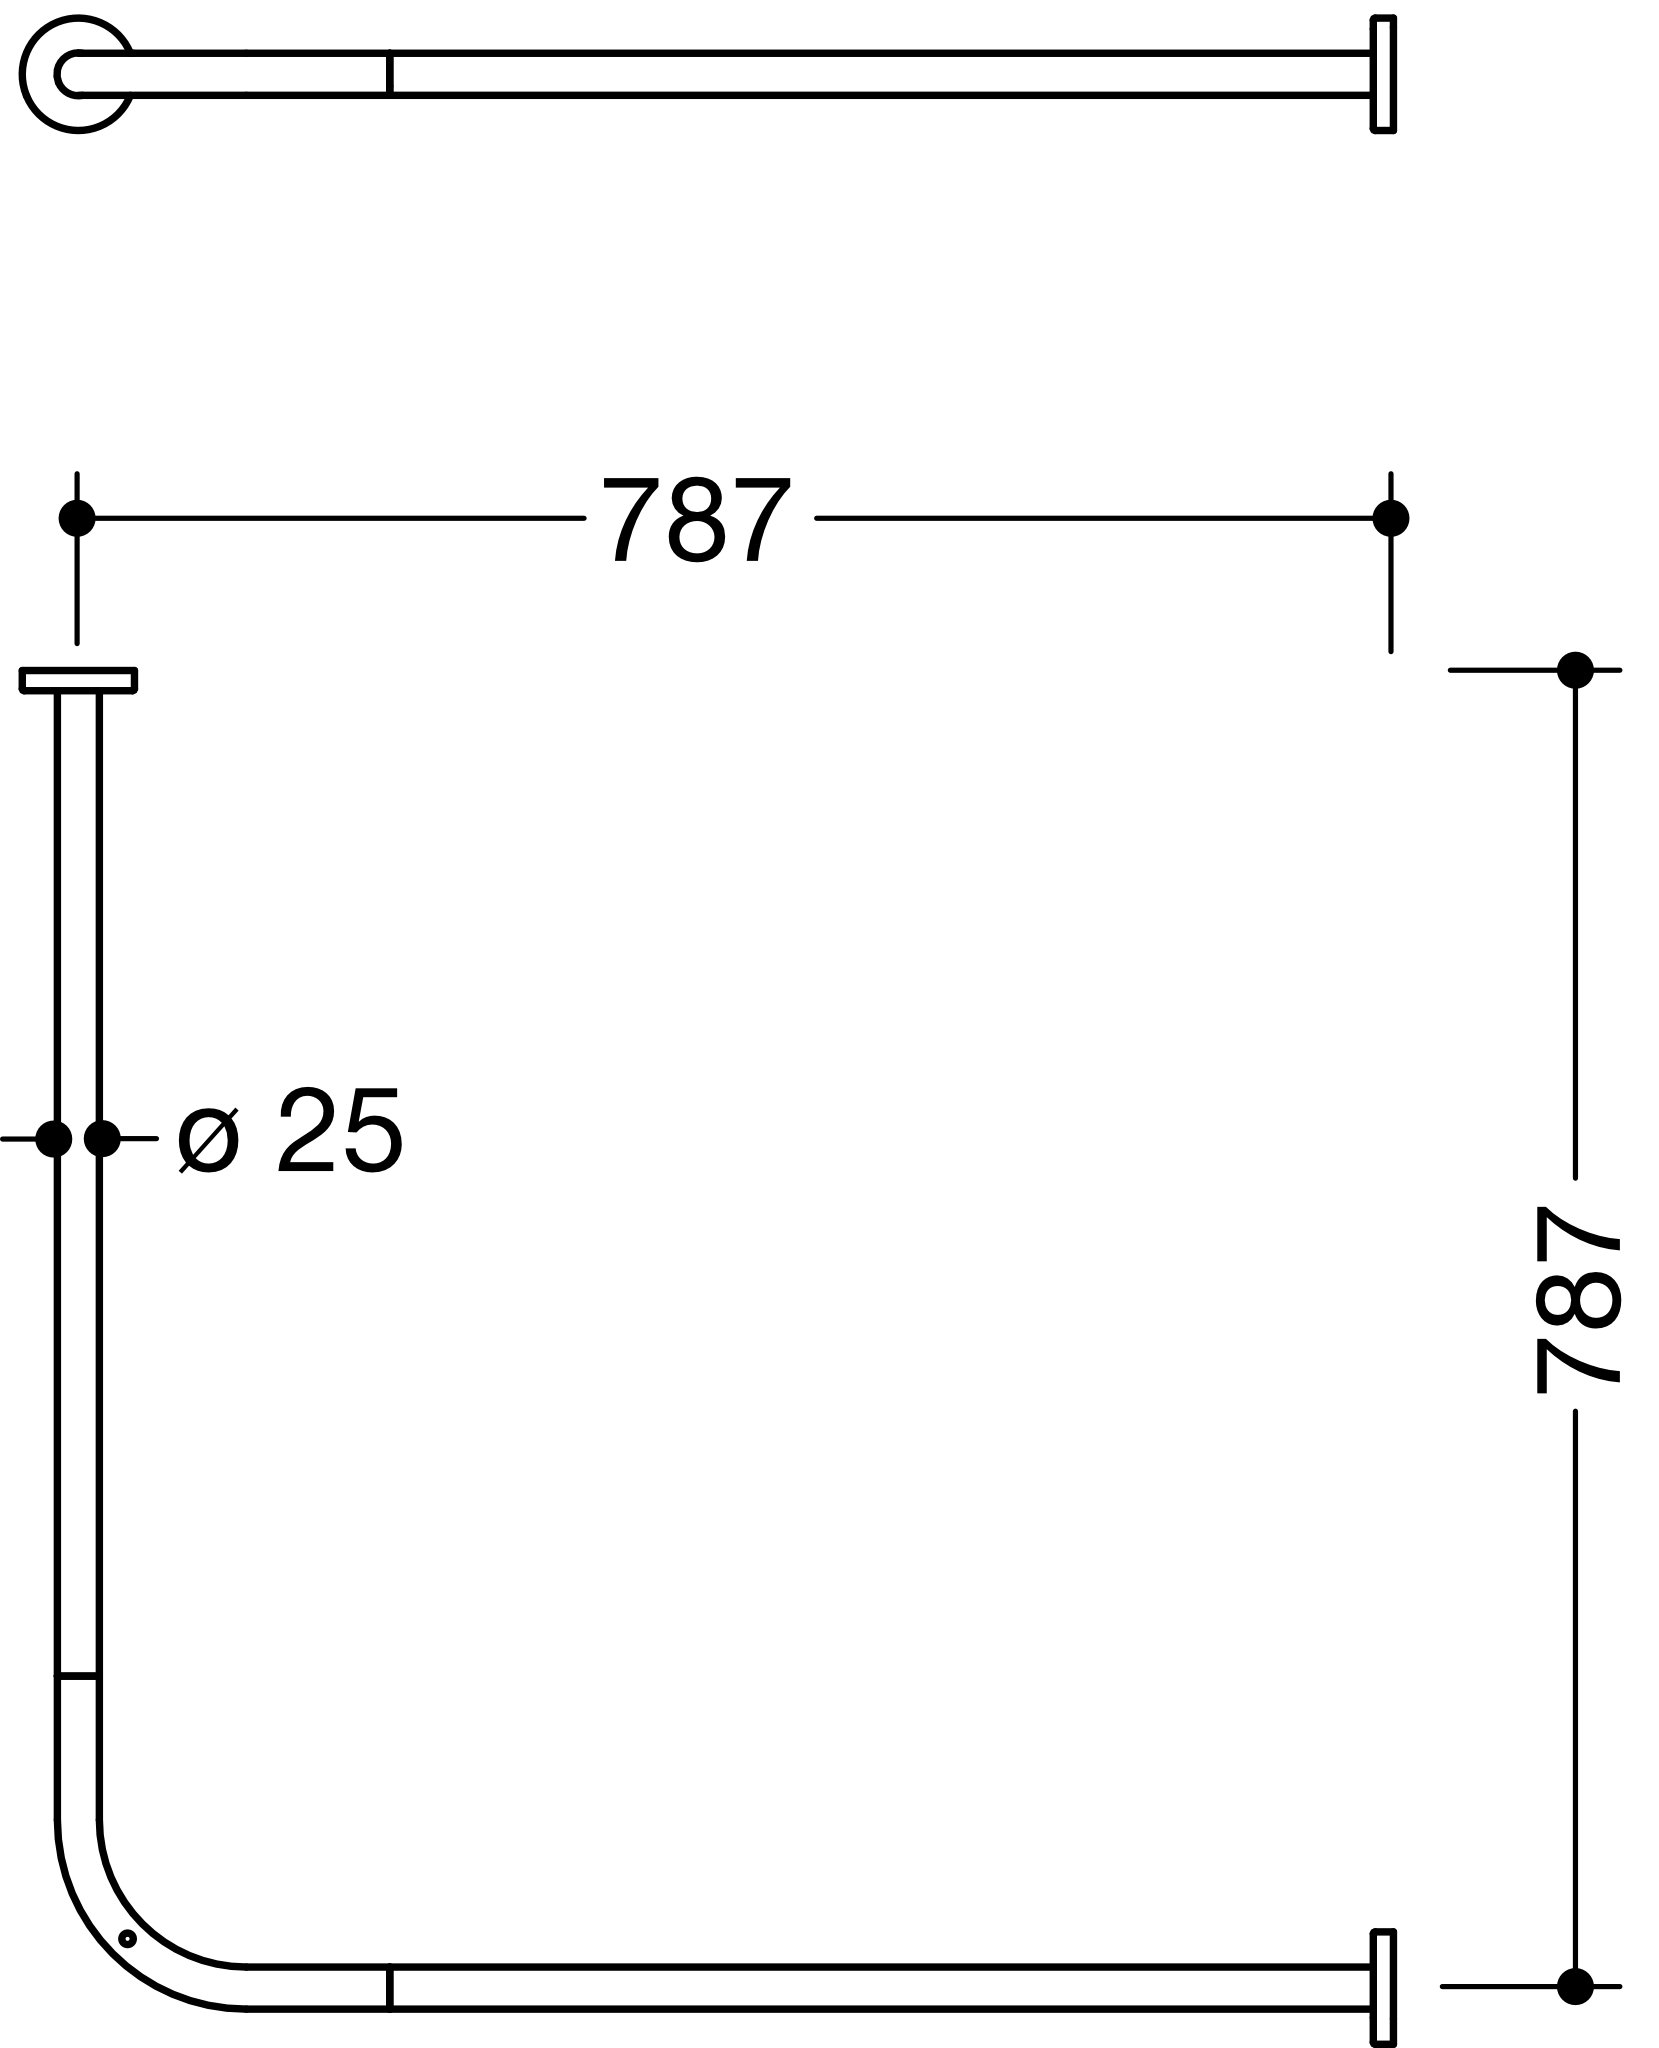 VH-Stange, d:25, A1/A2=787, 16 Ringe, schliff